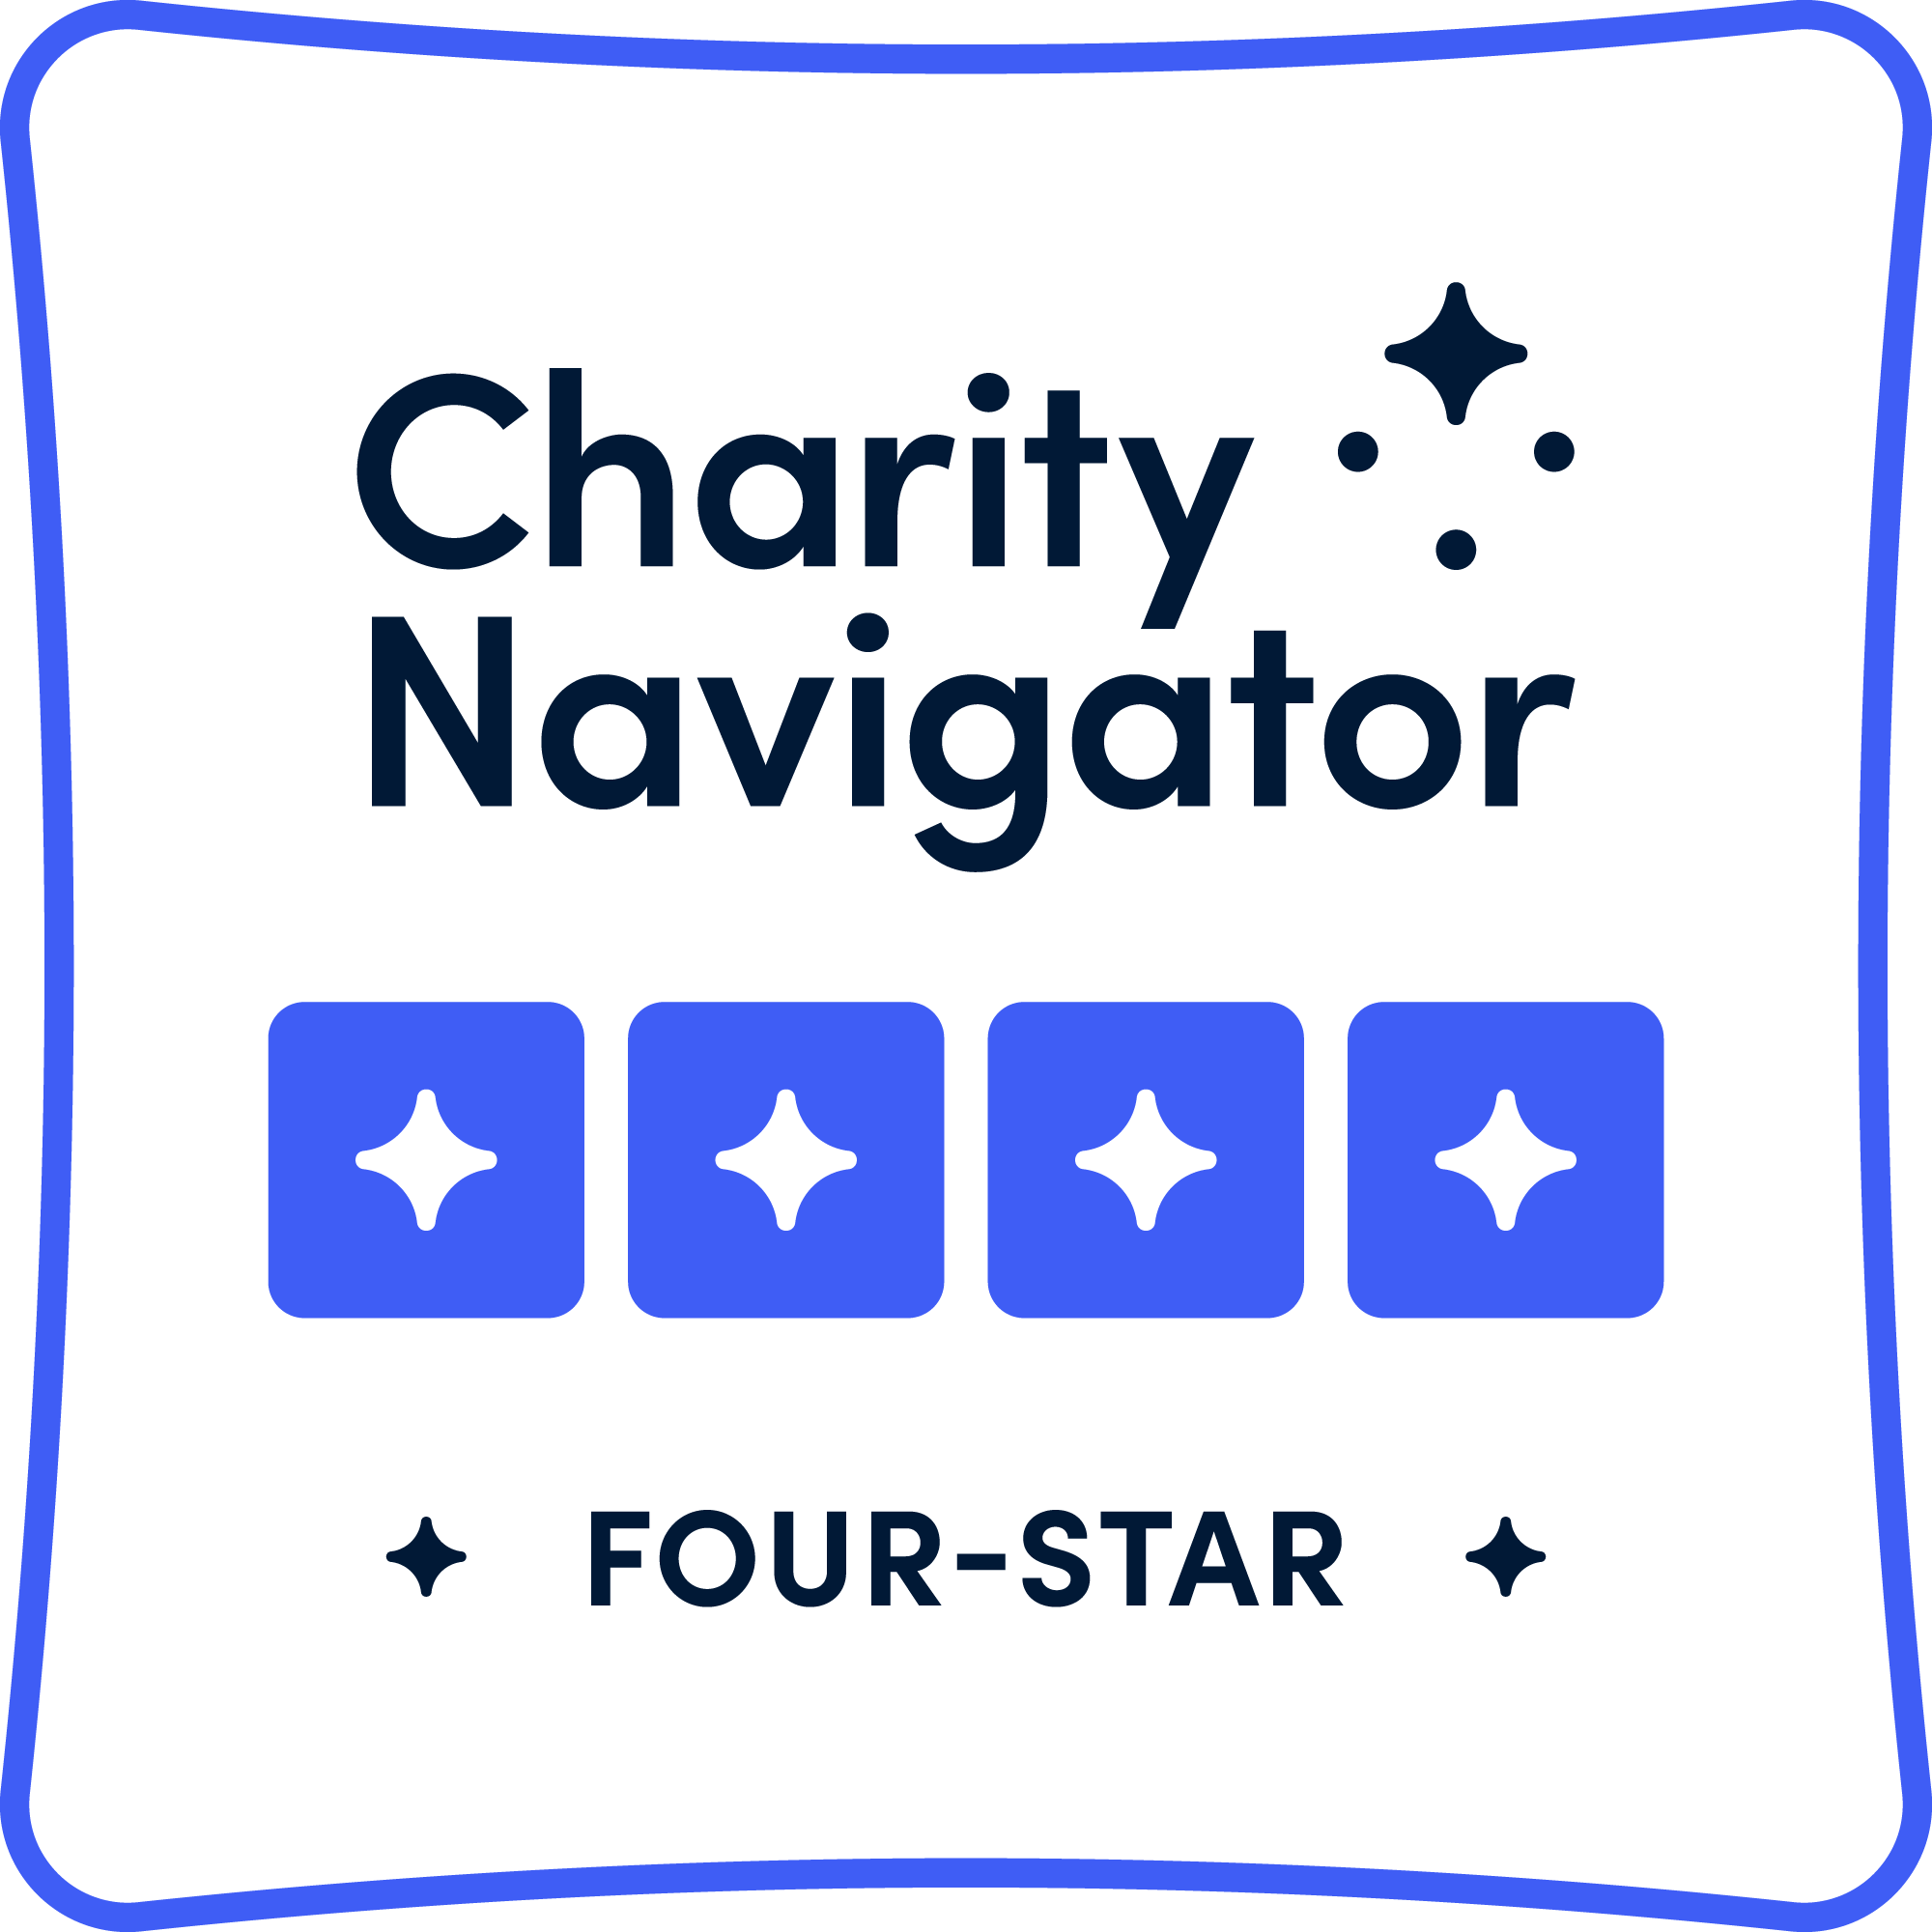 Charity Navigator: 4 Stars